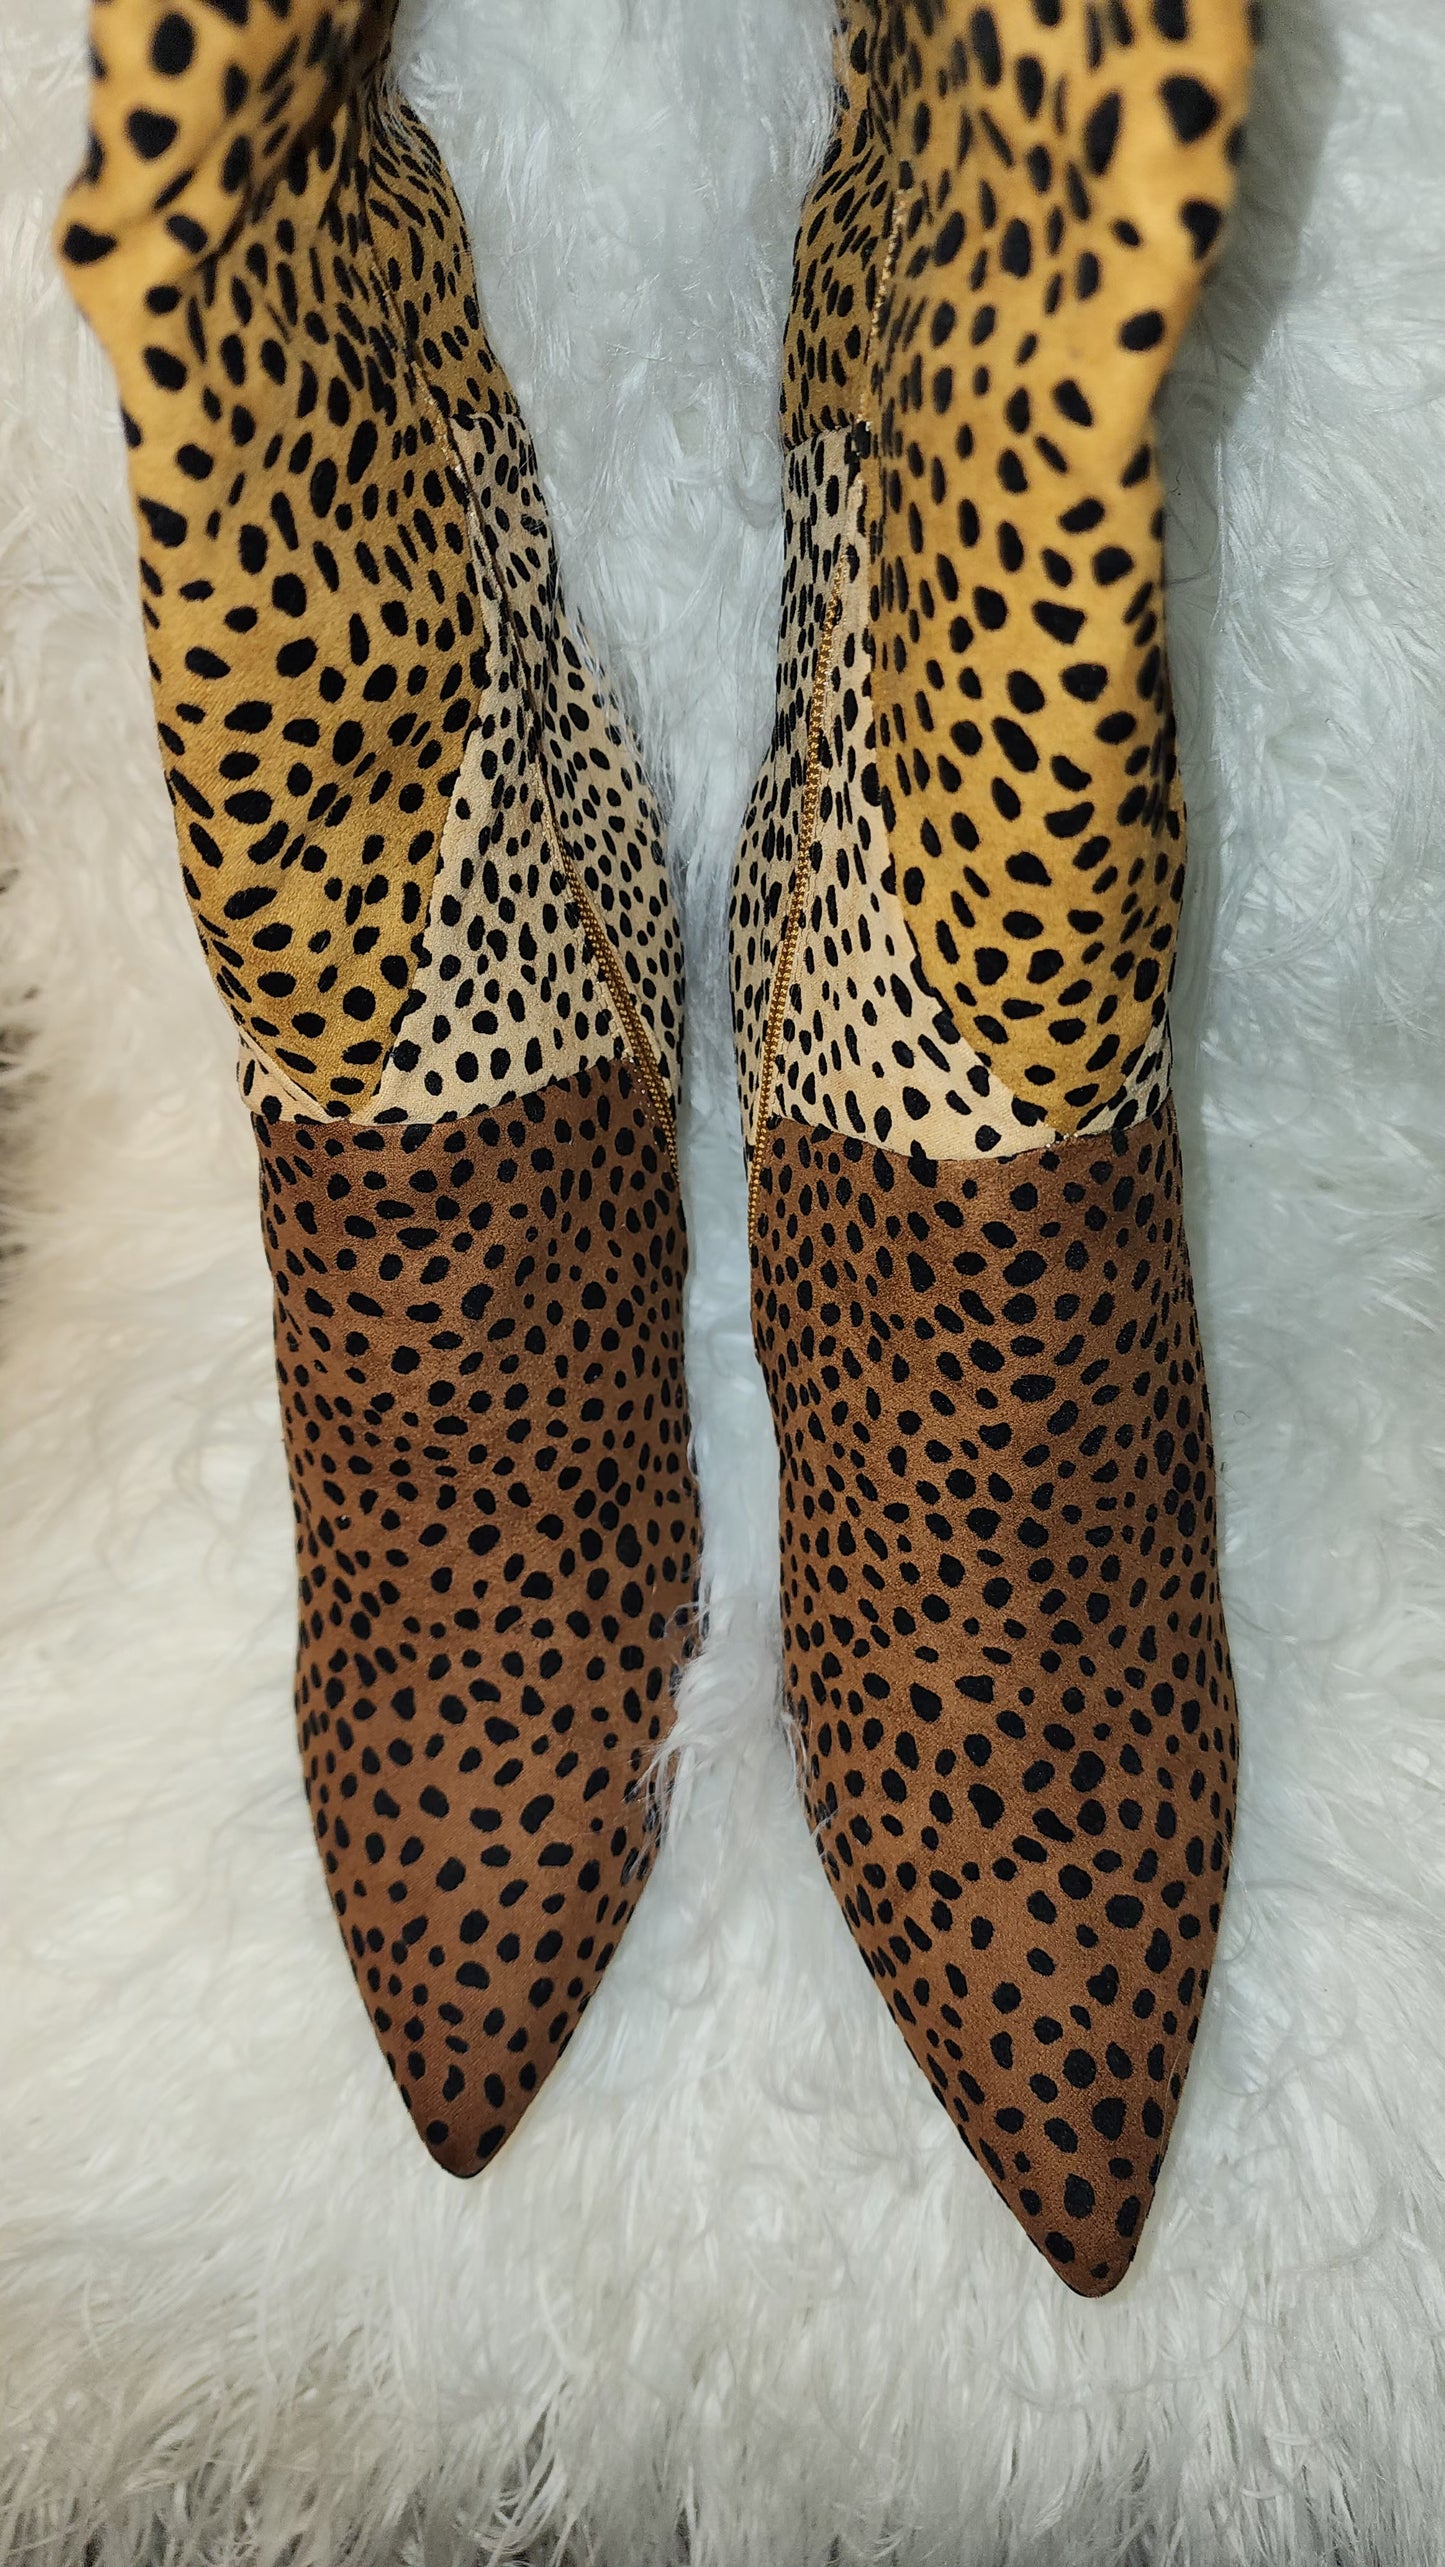 Cheetah  high boot